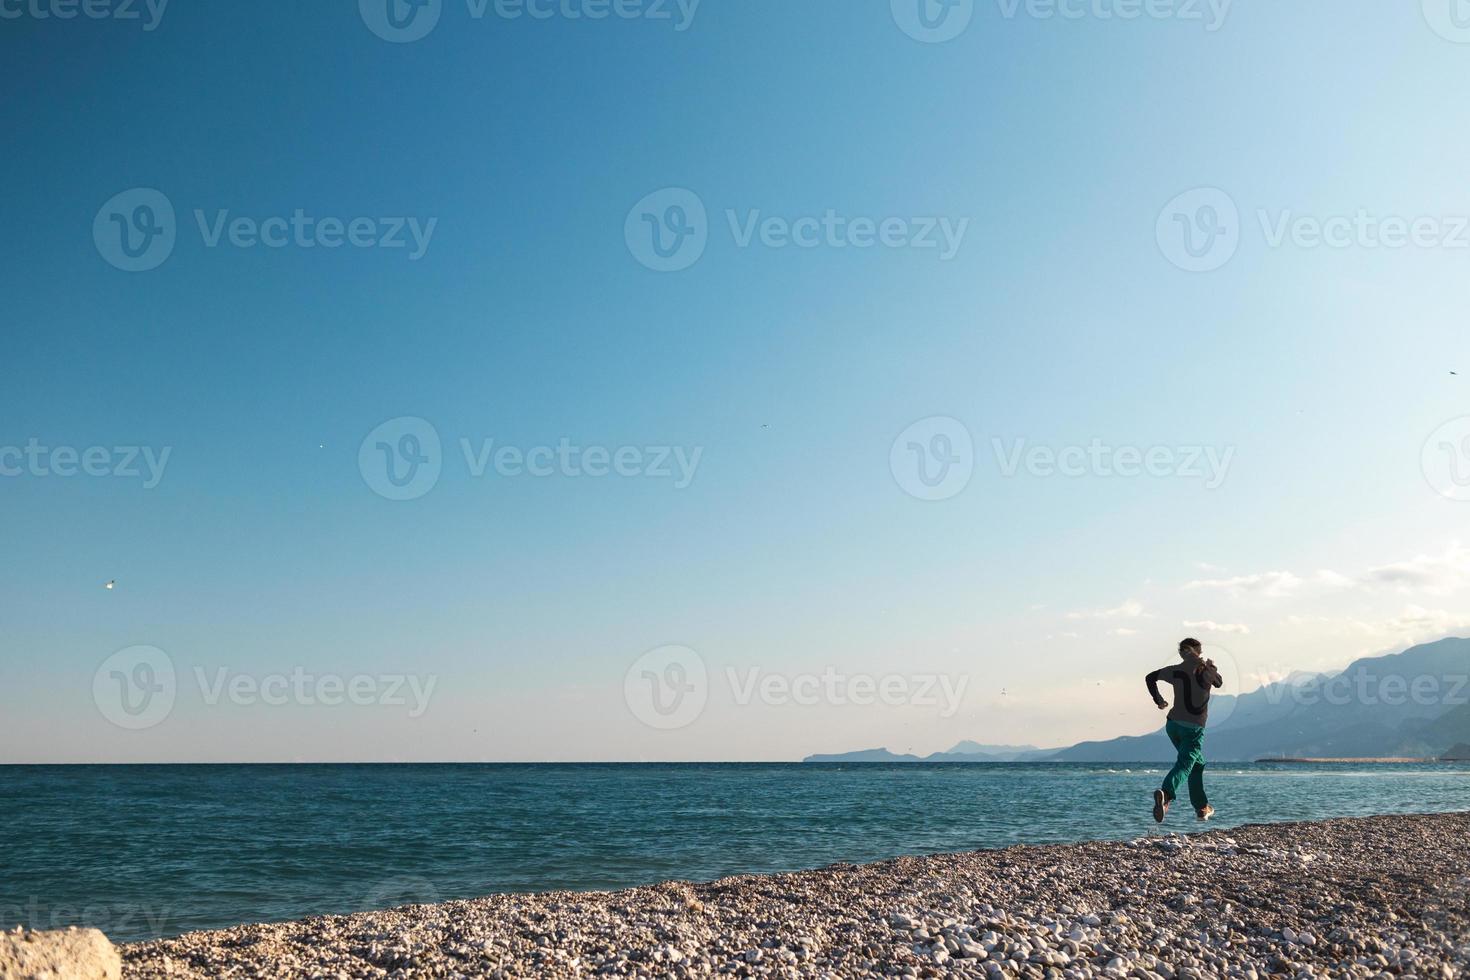 springer på sanden springer en kvinna längs stranden foto